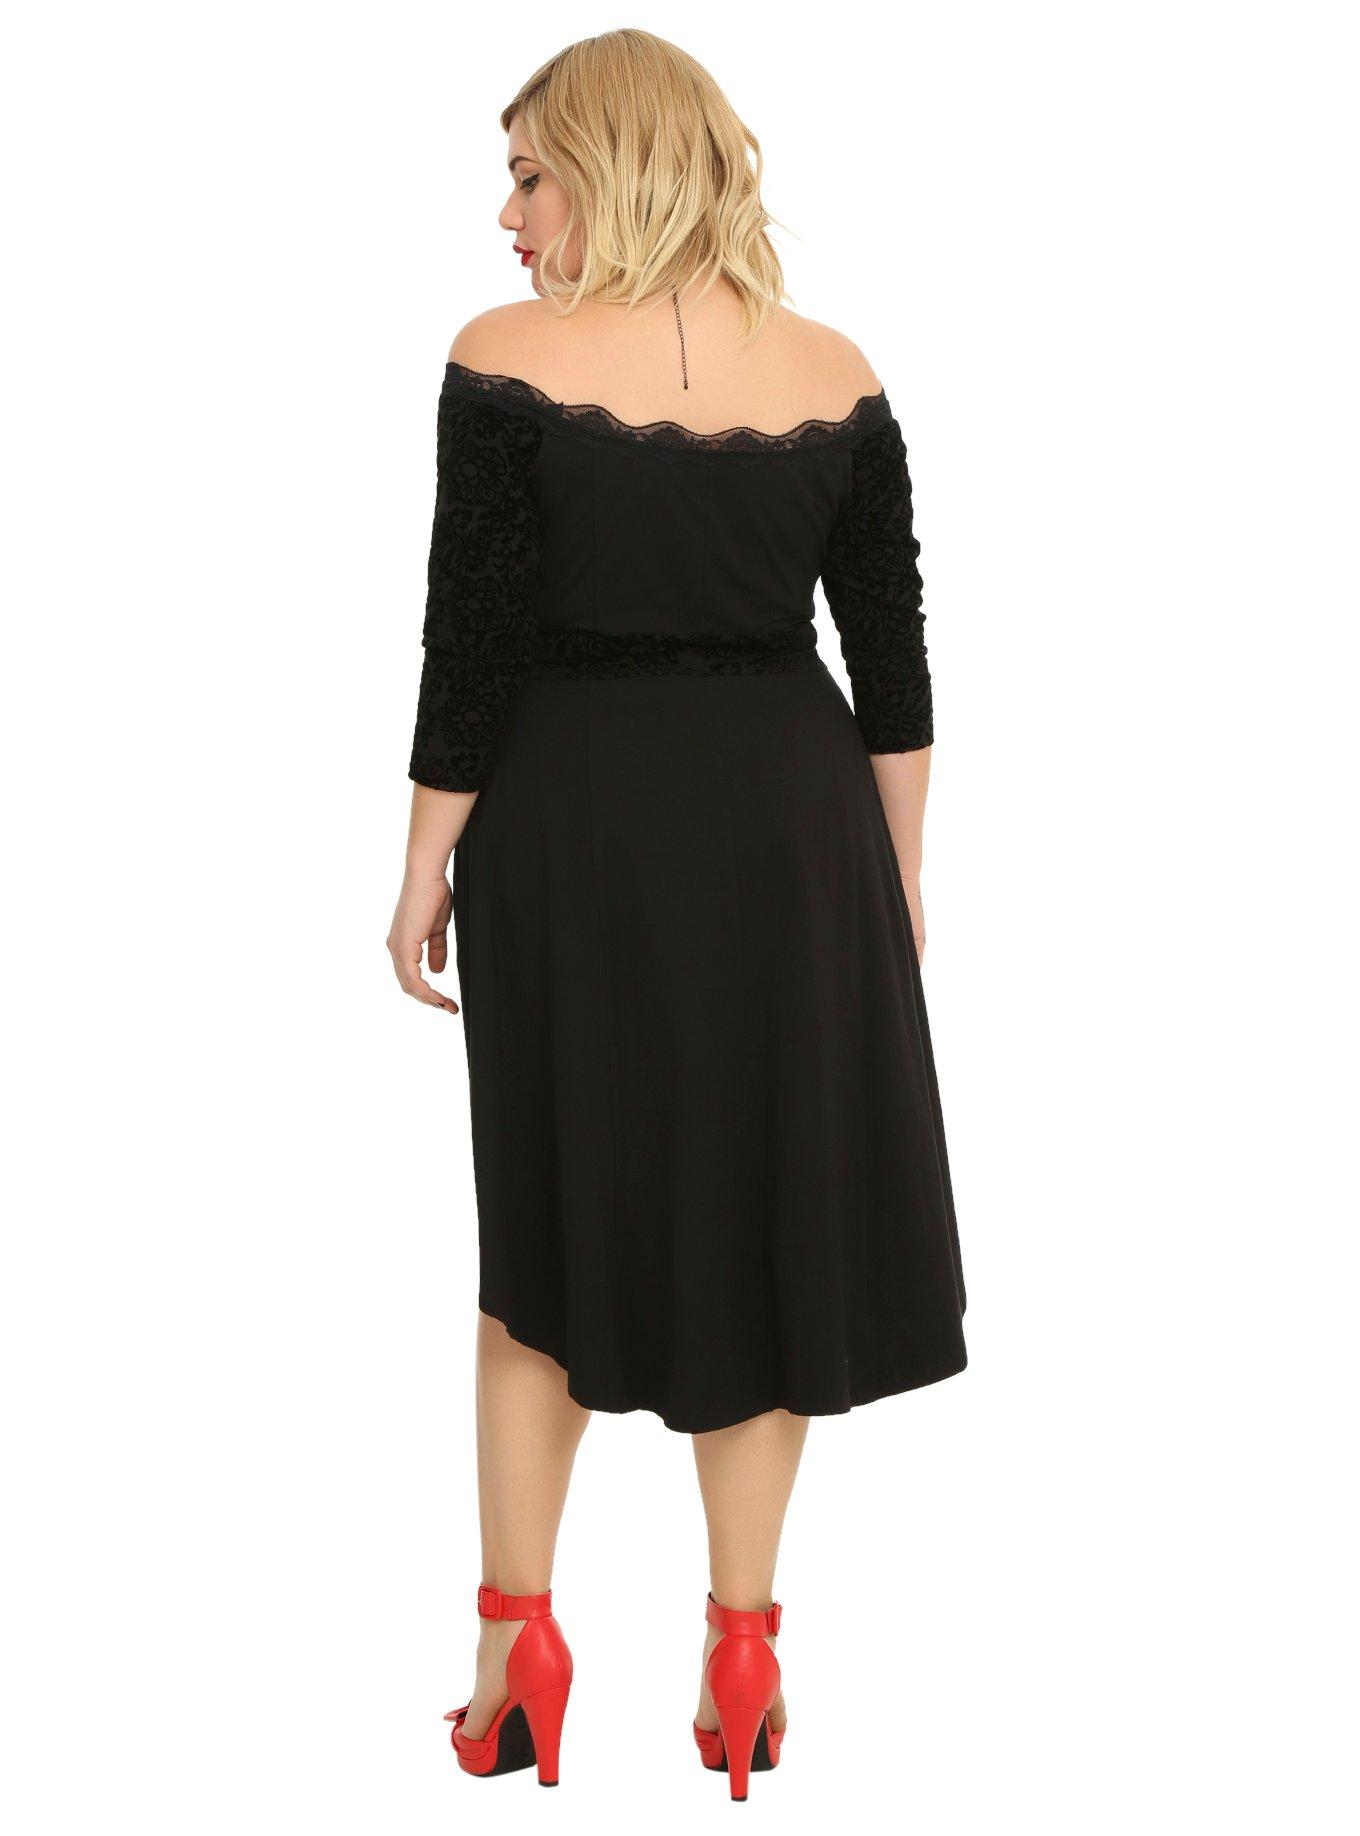 Tripp Black Lace-Up Hi-Low Dress Plus Size, , alternate